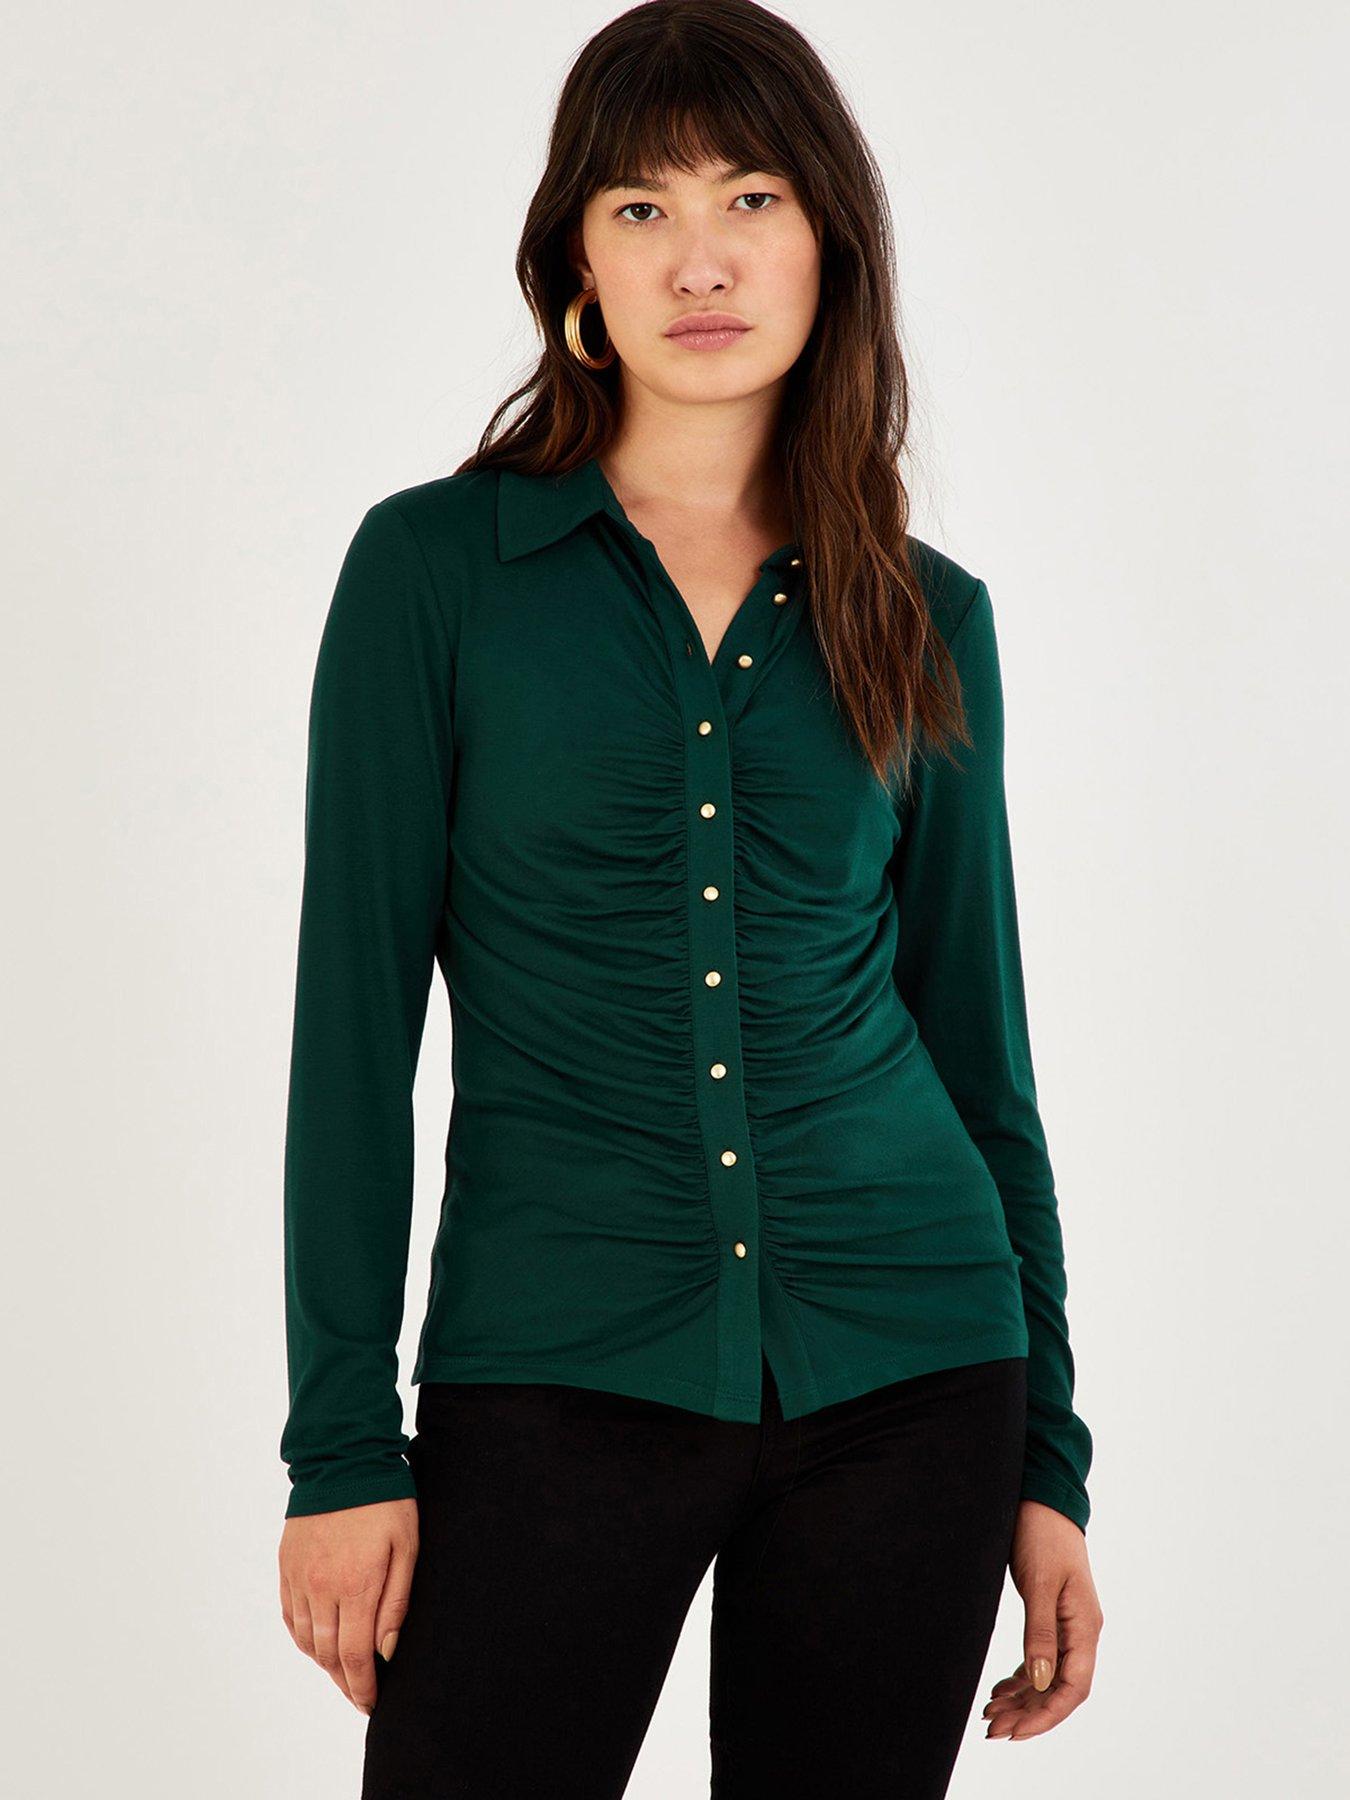 WOMEN FASHION Shirts & T-shirts Tunic Asymmetric discount 64% Firenze tunic Green L 